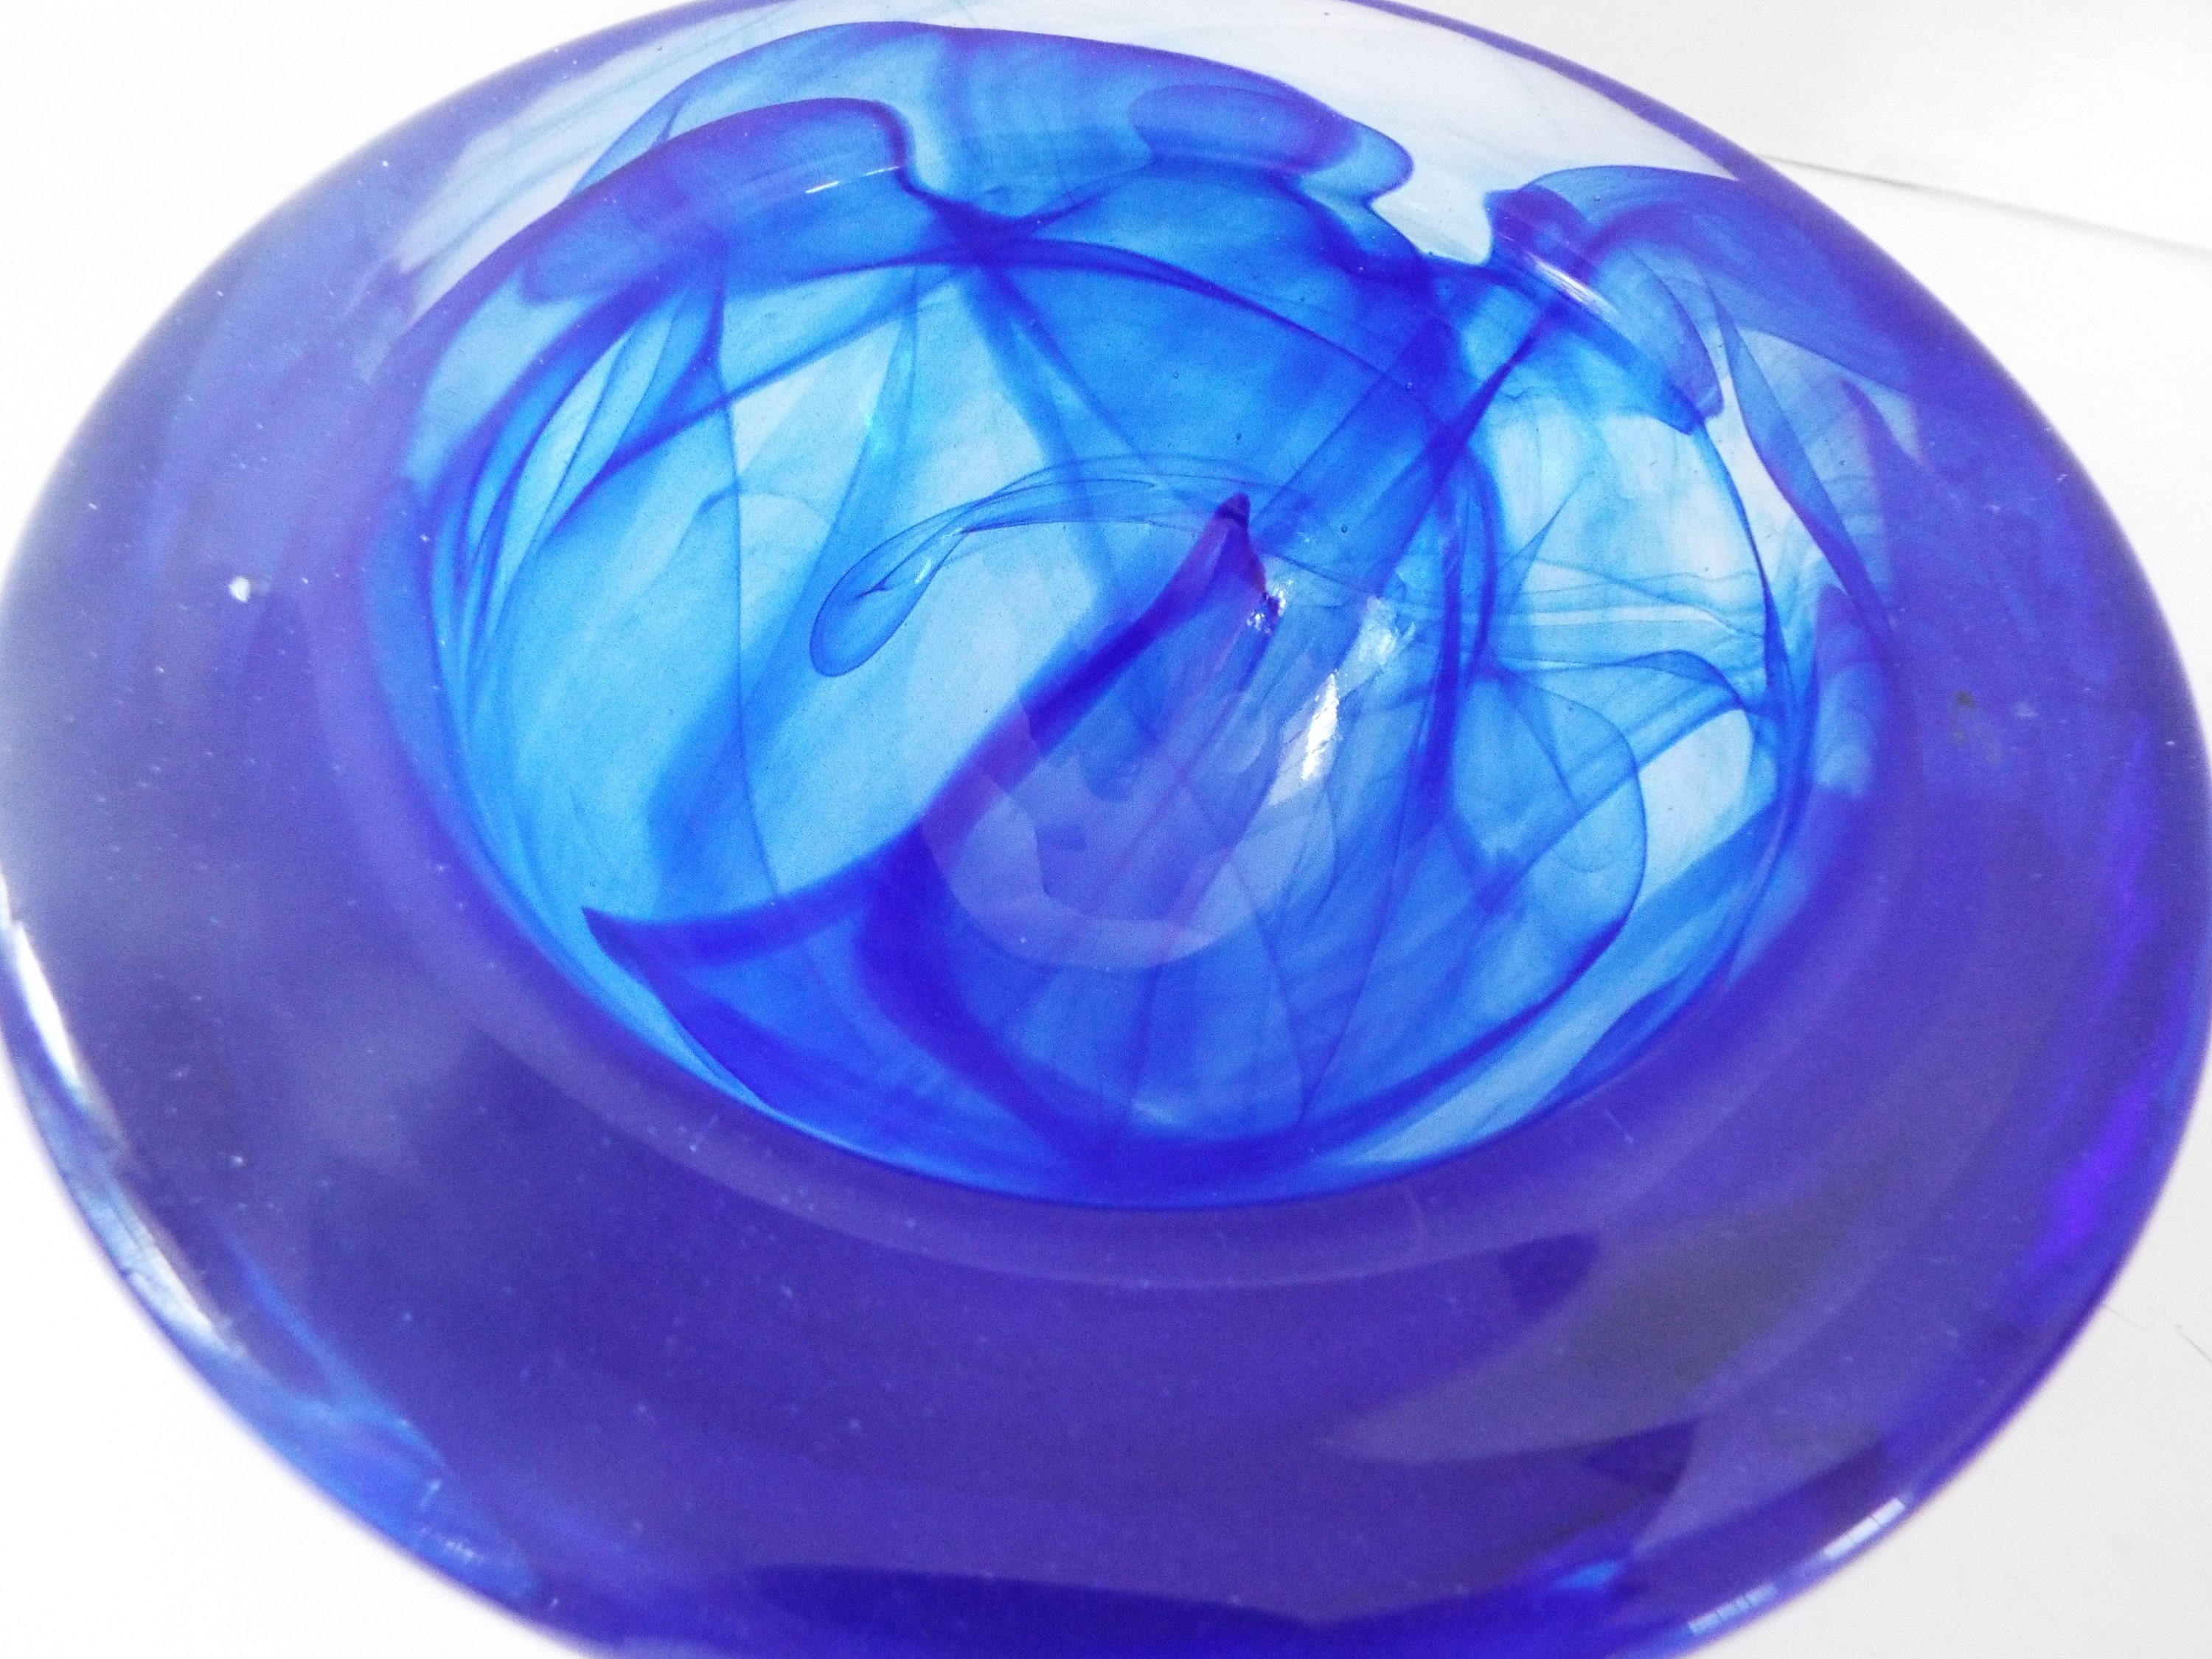 2002bf06 Shore - Ensaladera (cristal, 7.1 in), color azul